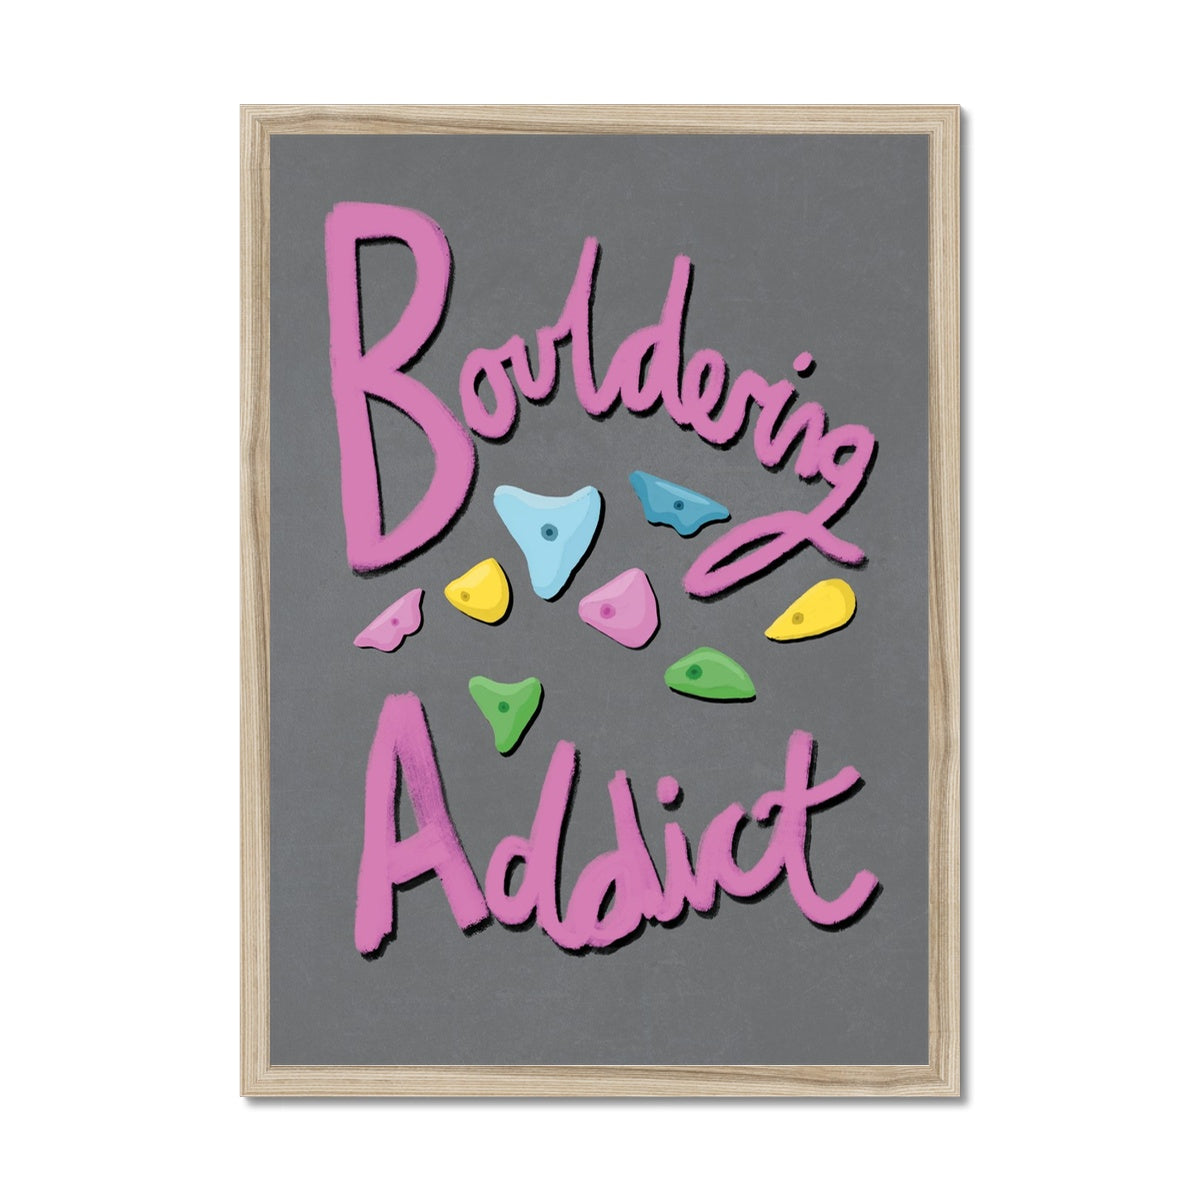 Bouldering Addict - Light Grey and Pink Framed Print